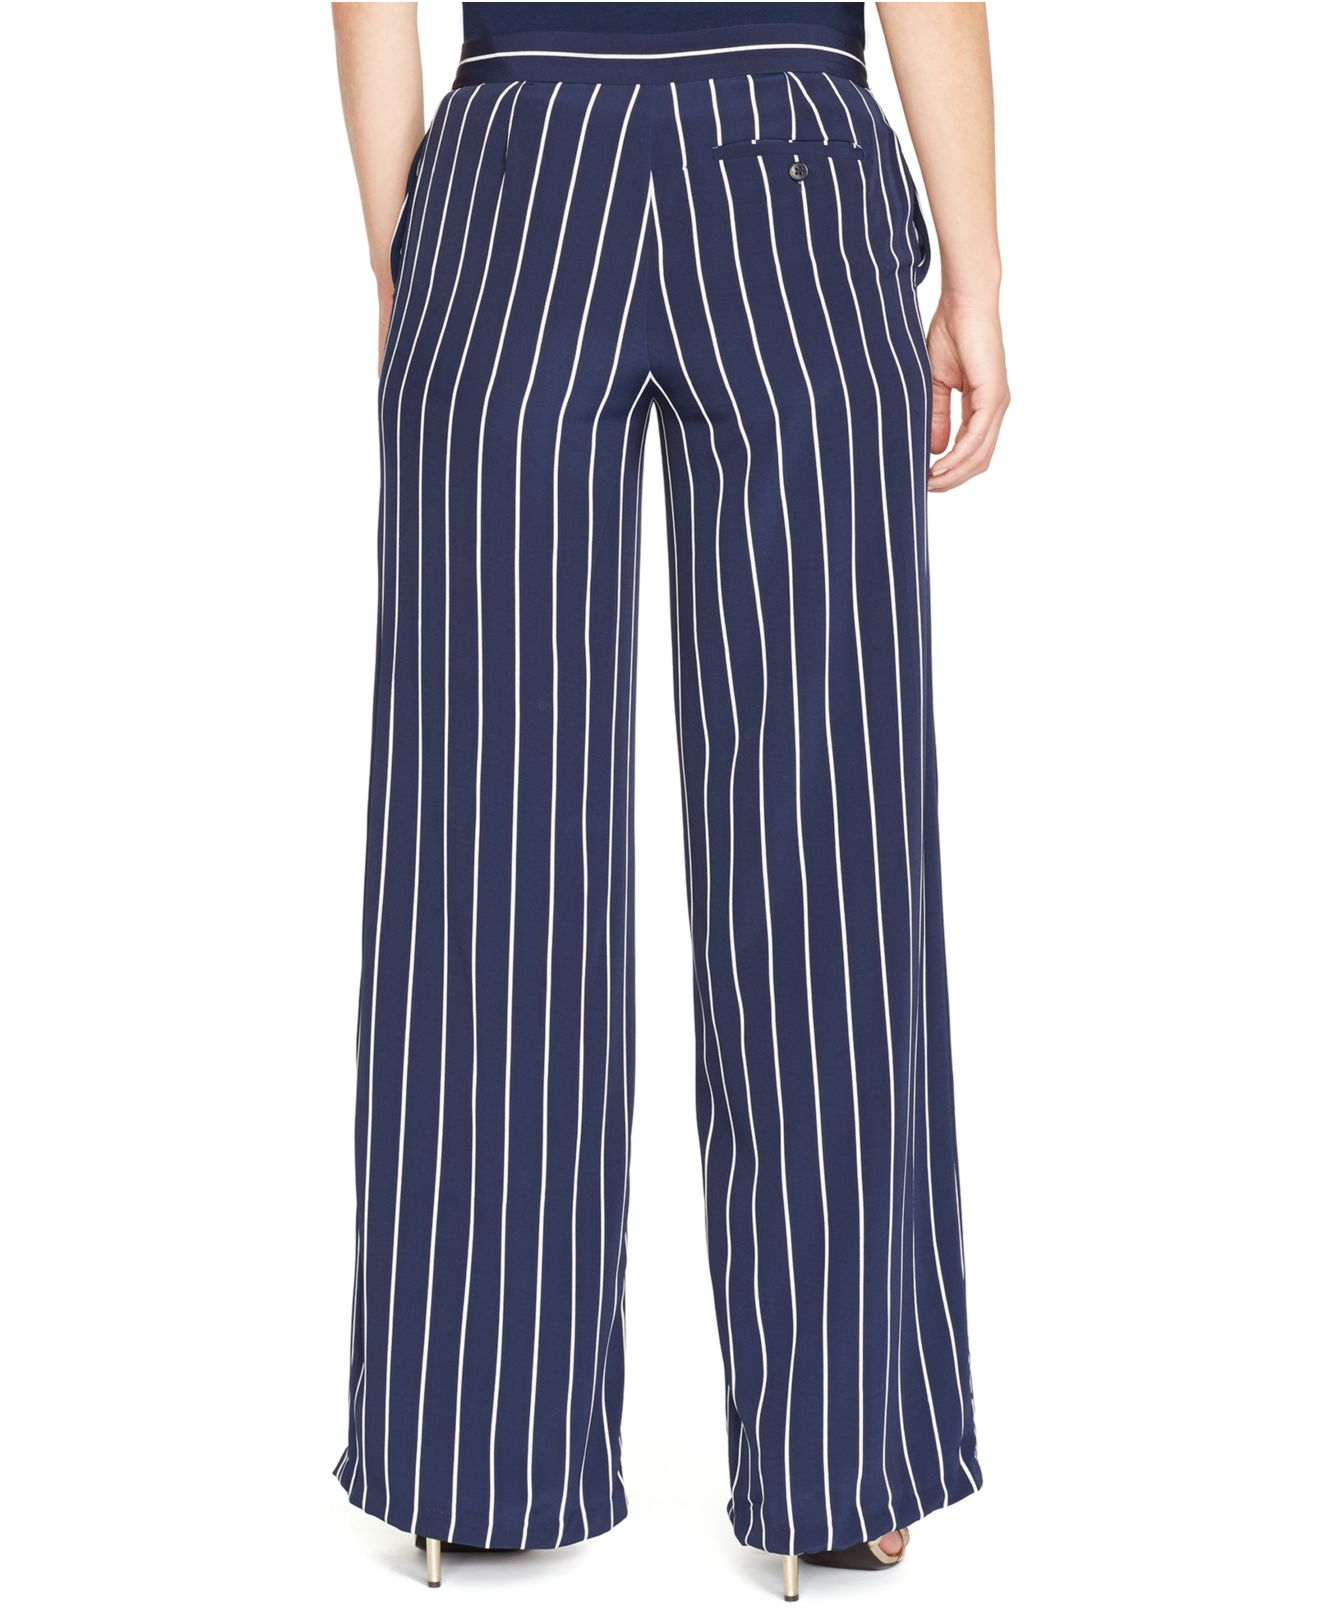 Lyst - Lauren by ralph lauren Plus Size Striped Wide-Leg Pants in Blue